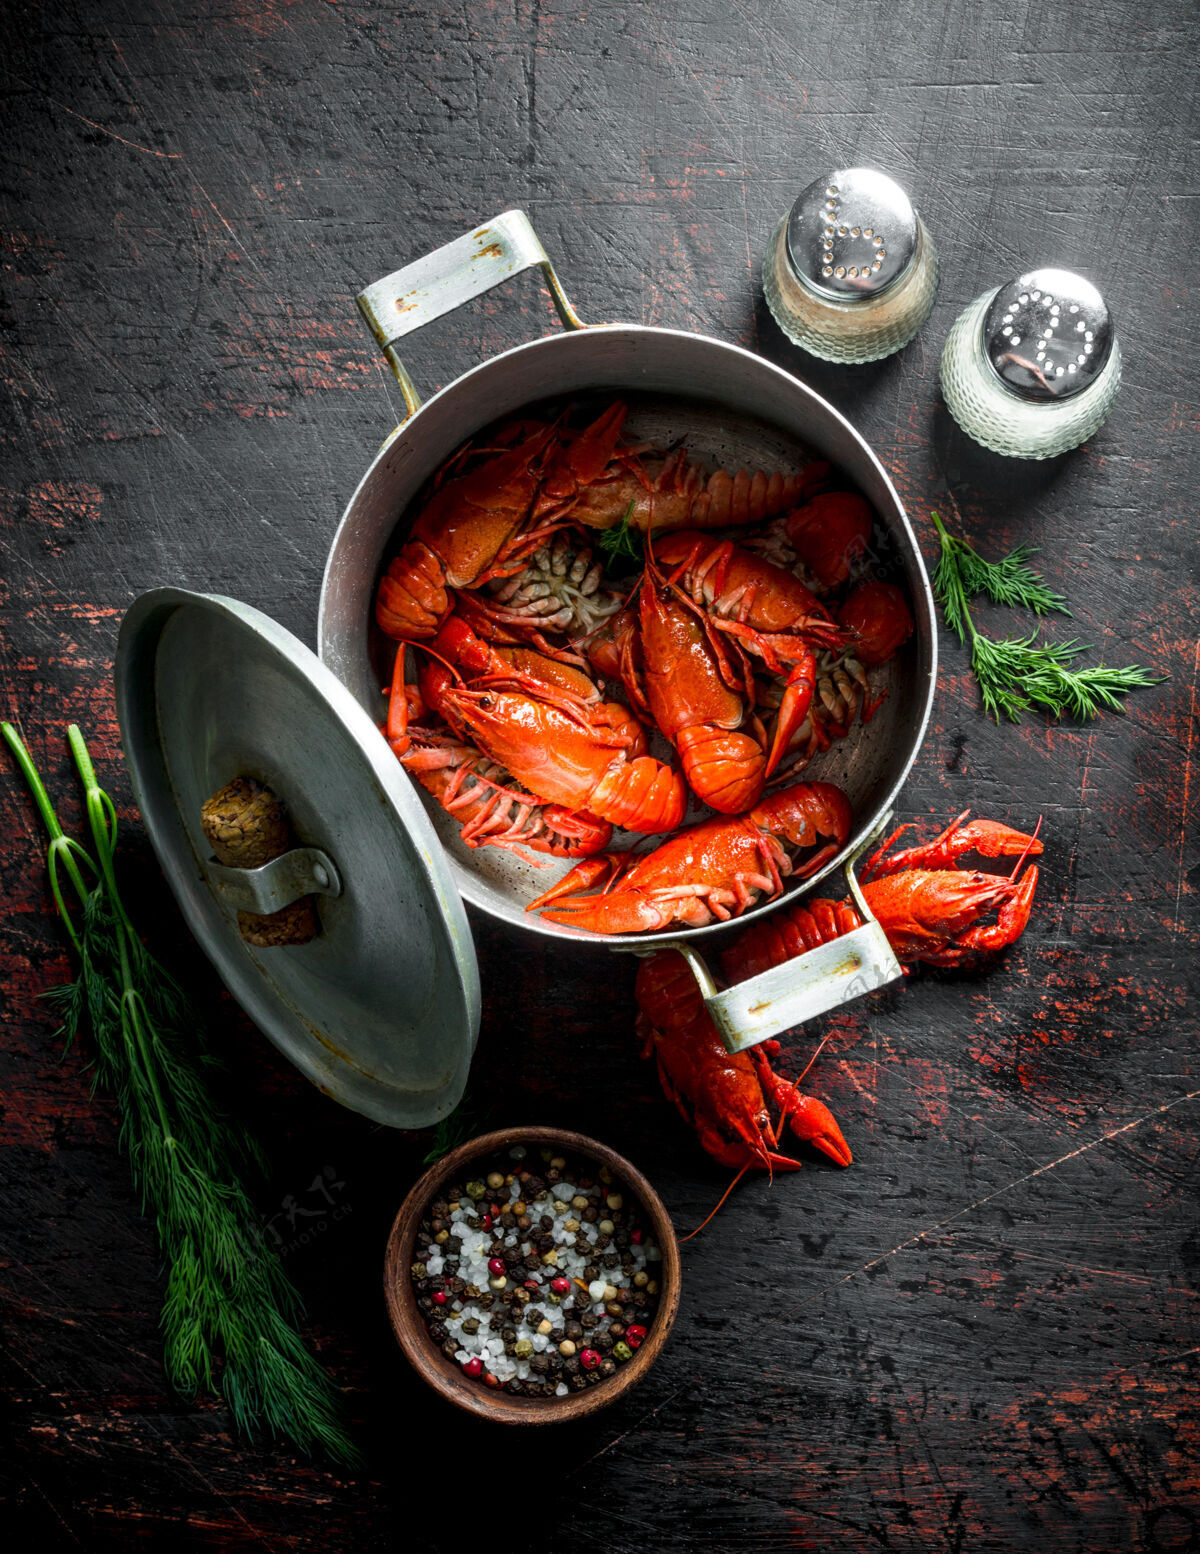 食物用调味料和莳萝放在一只锅里煮红的小龙虾 放在深色的乡村餐桌上海鲜贝类鱼